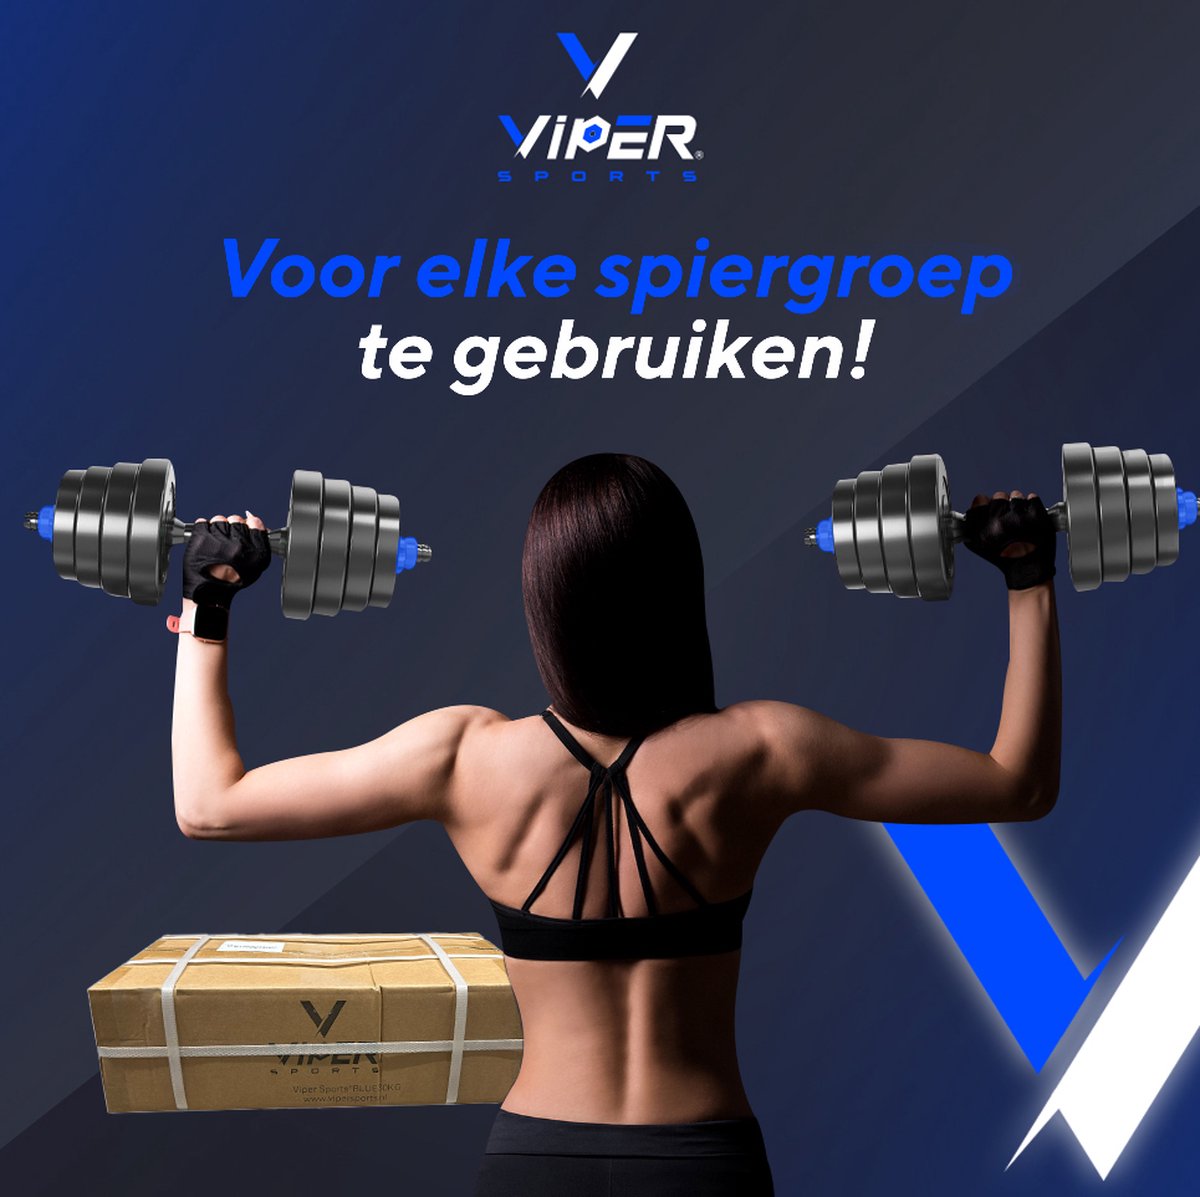 Viper Sports Adjustable dumbbell set up to 30 kg